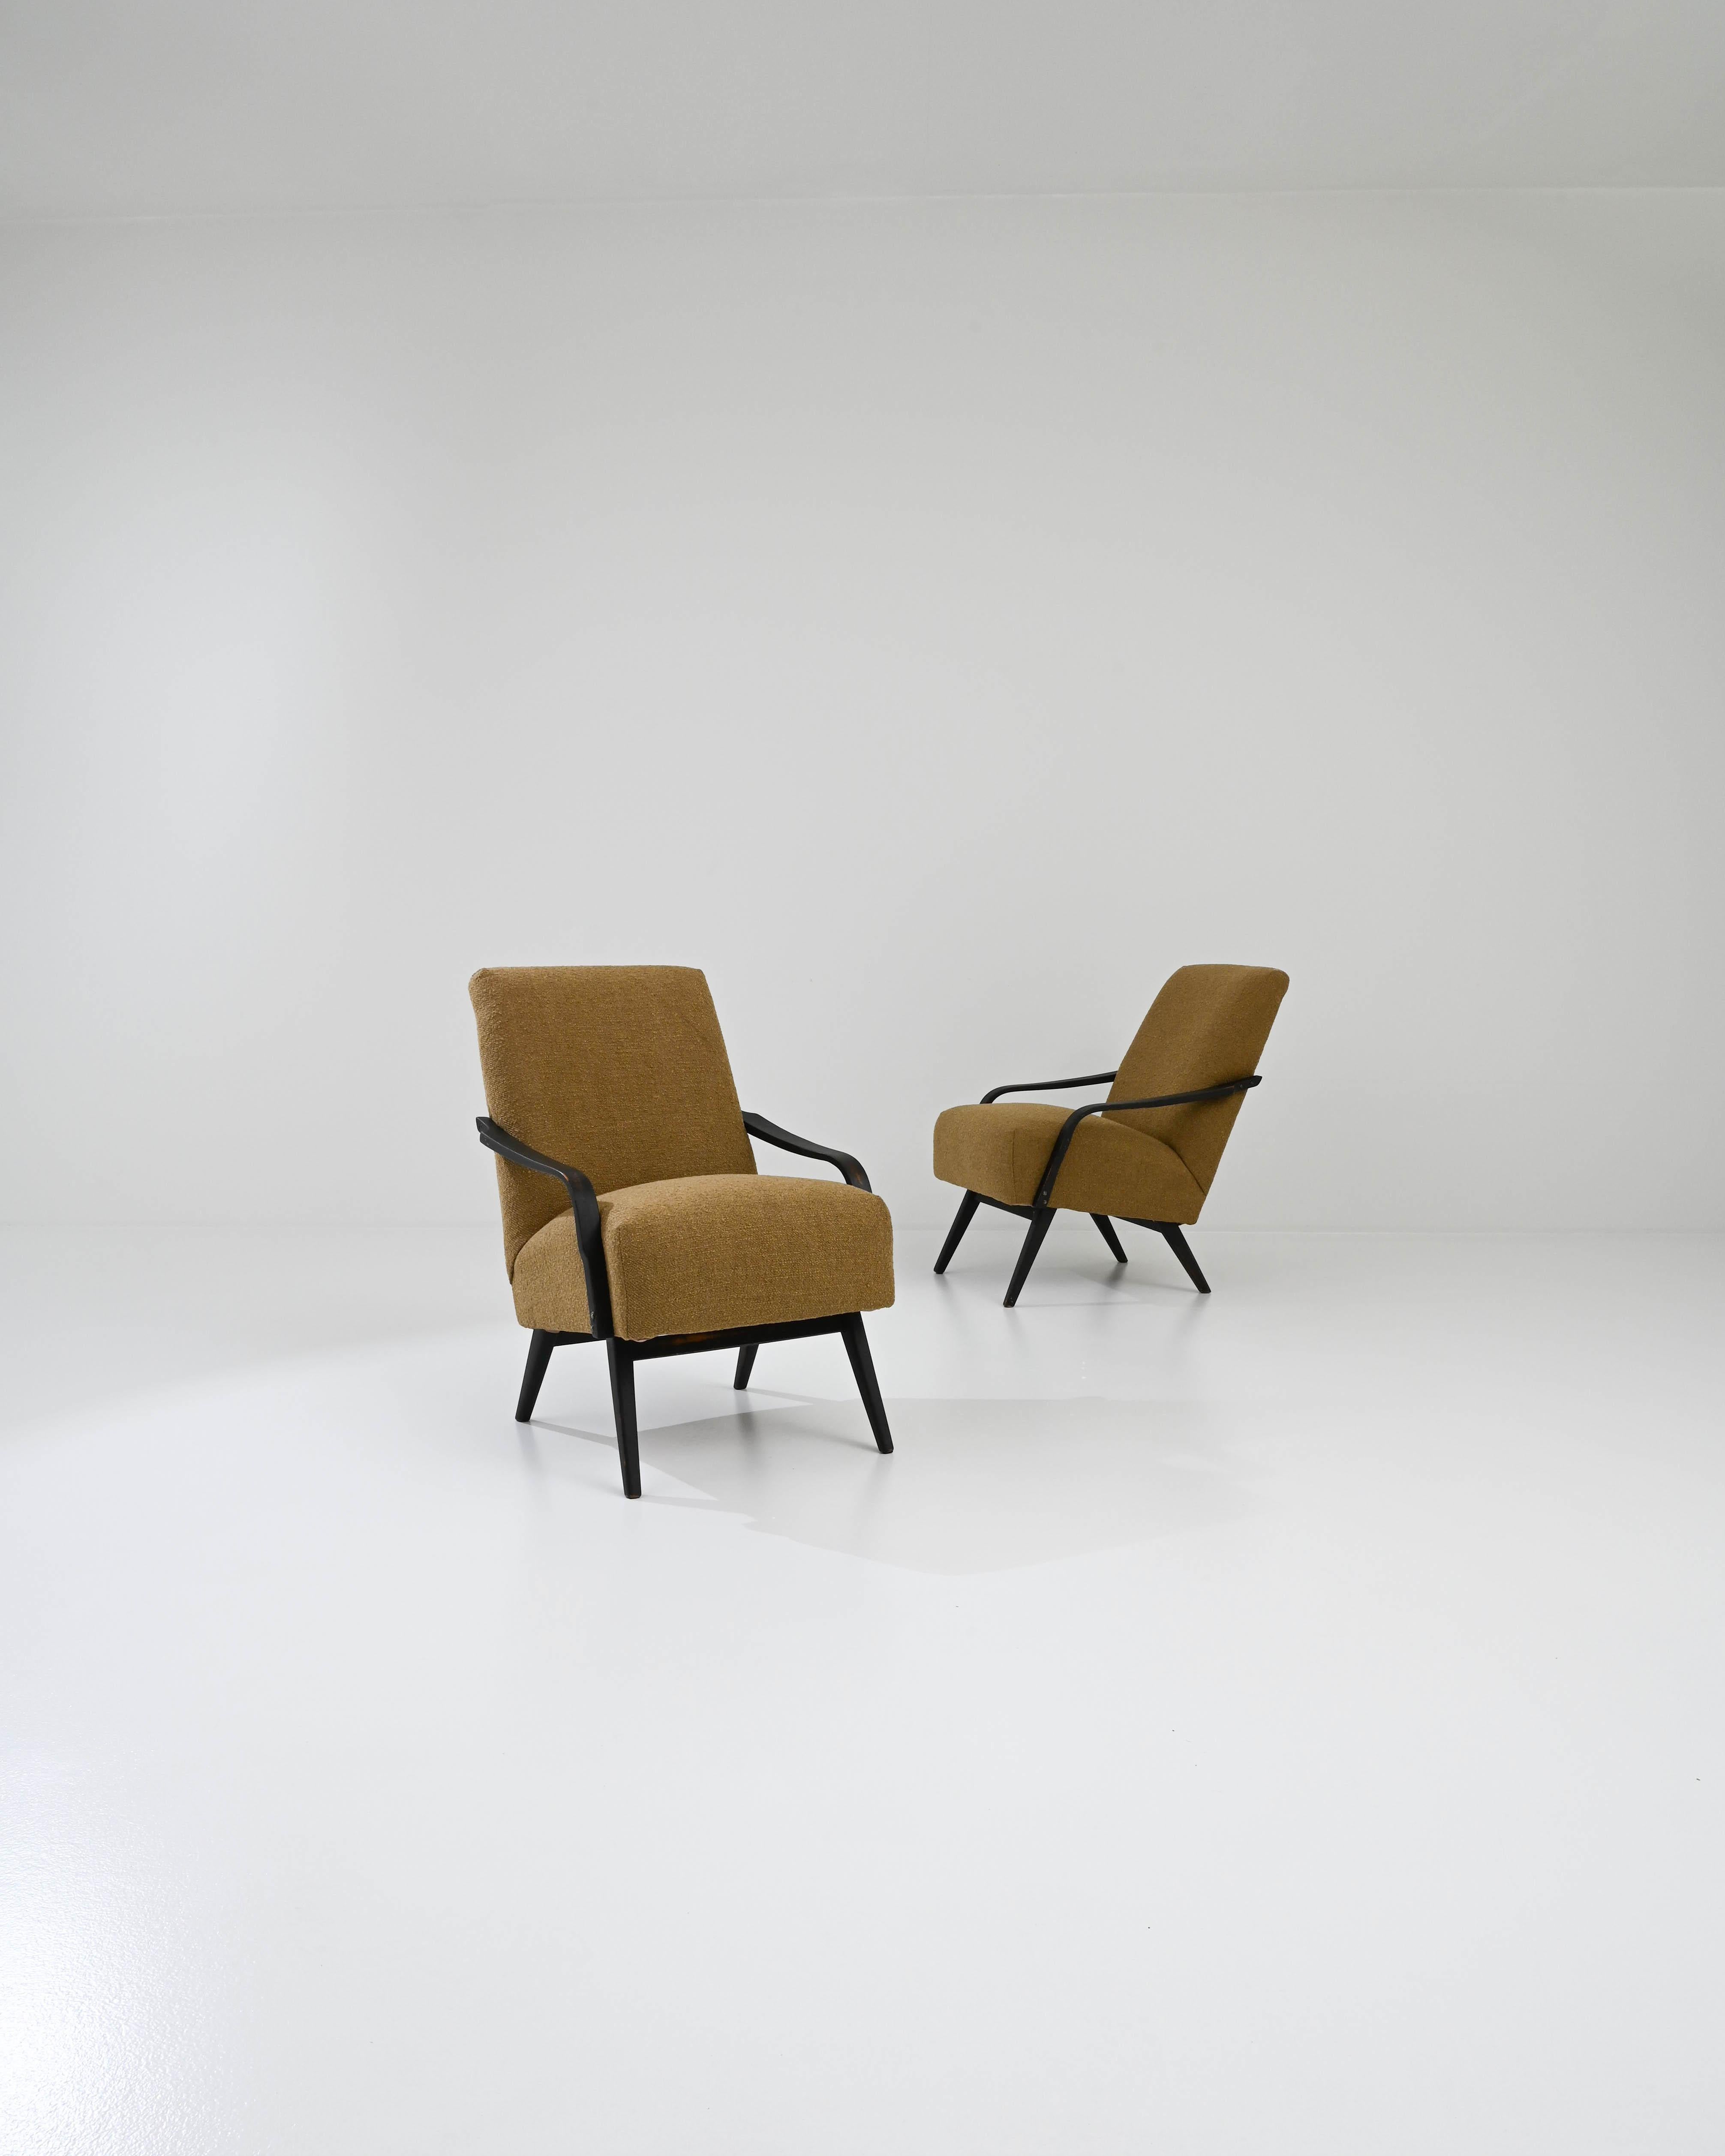 Conçue et fabriquée par le célèbre fabricant de meubles TON et revêtue de couleurs caramel brûlé, cette paire de chaises vintage Mid-century modern présente un accent facile à vivre, mais sobre. Ces fauteuils courbes en bois courbé vous invitent à